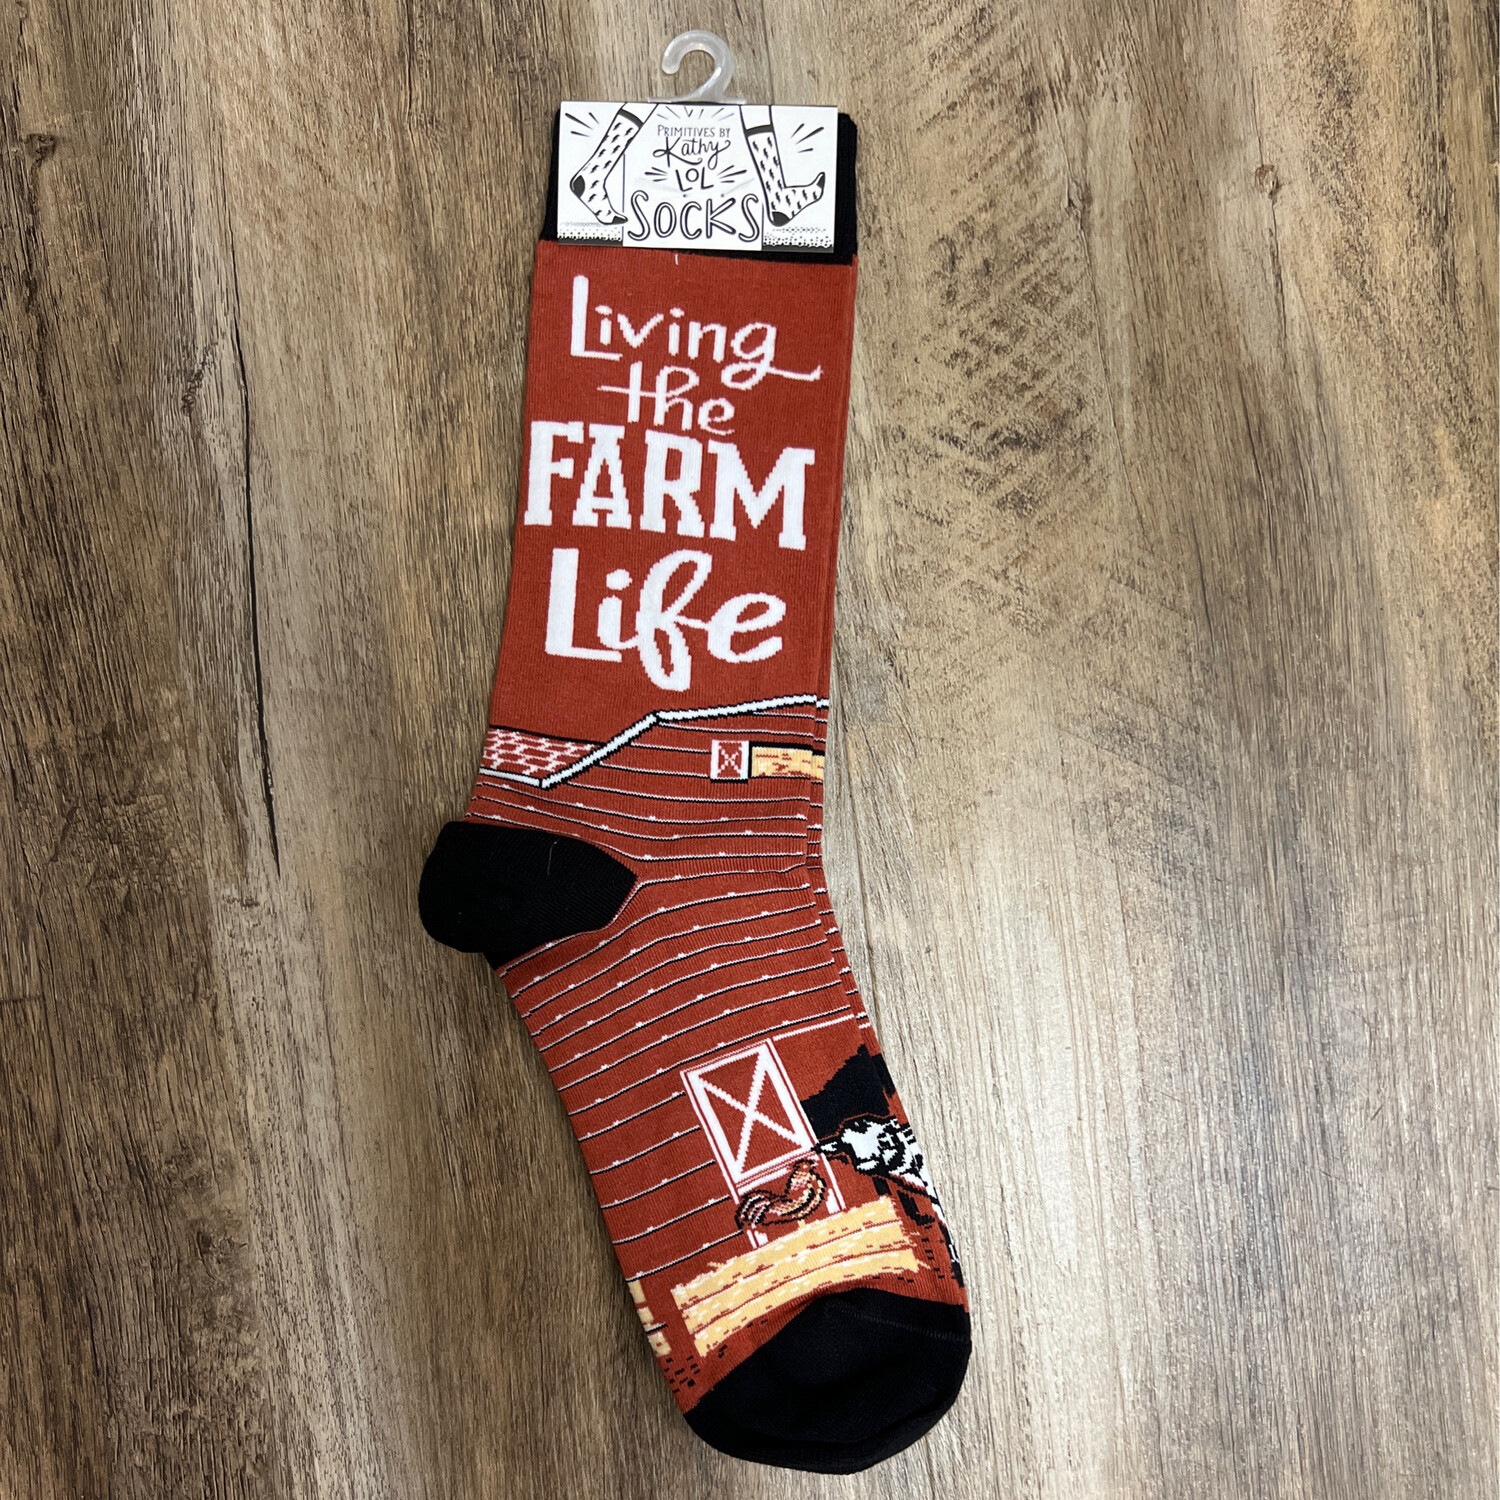 Farm Life Socks